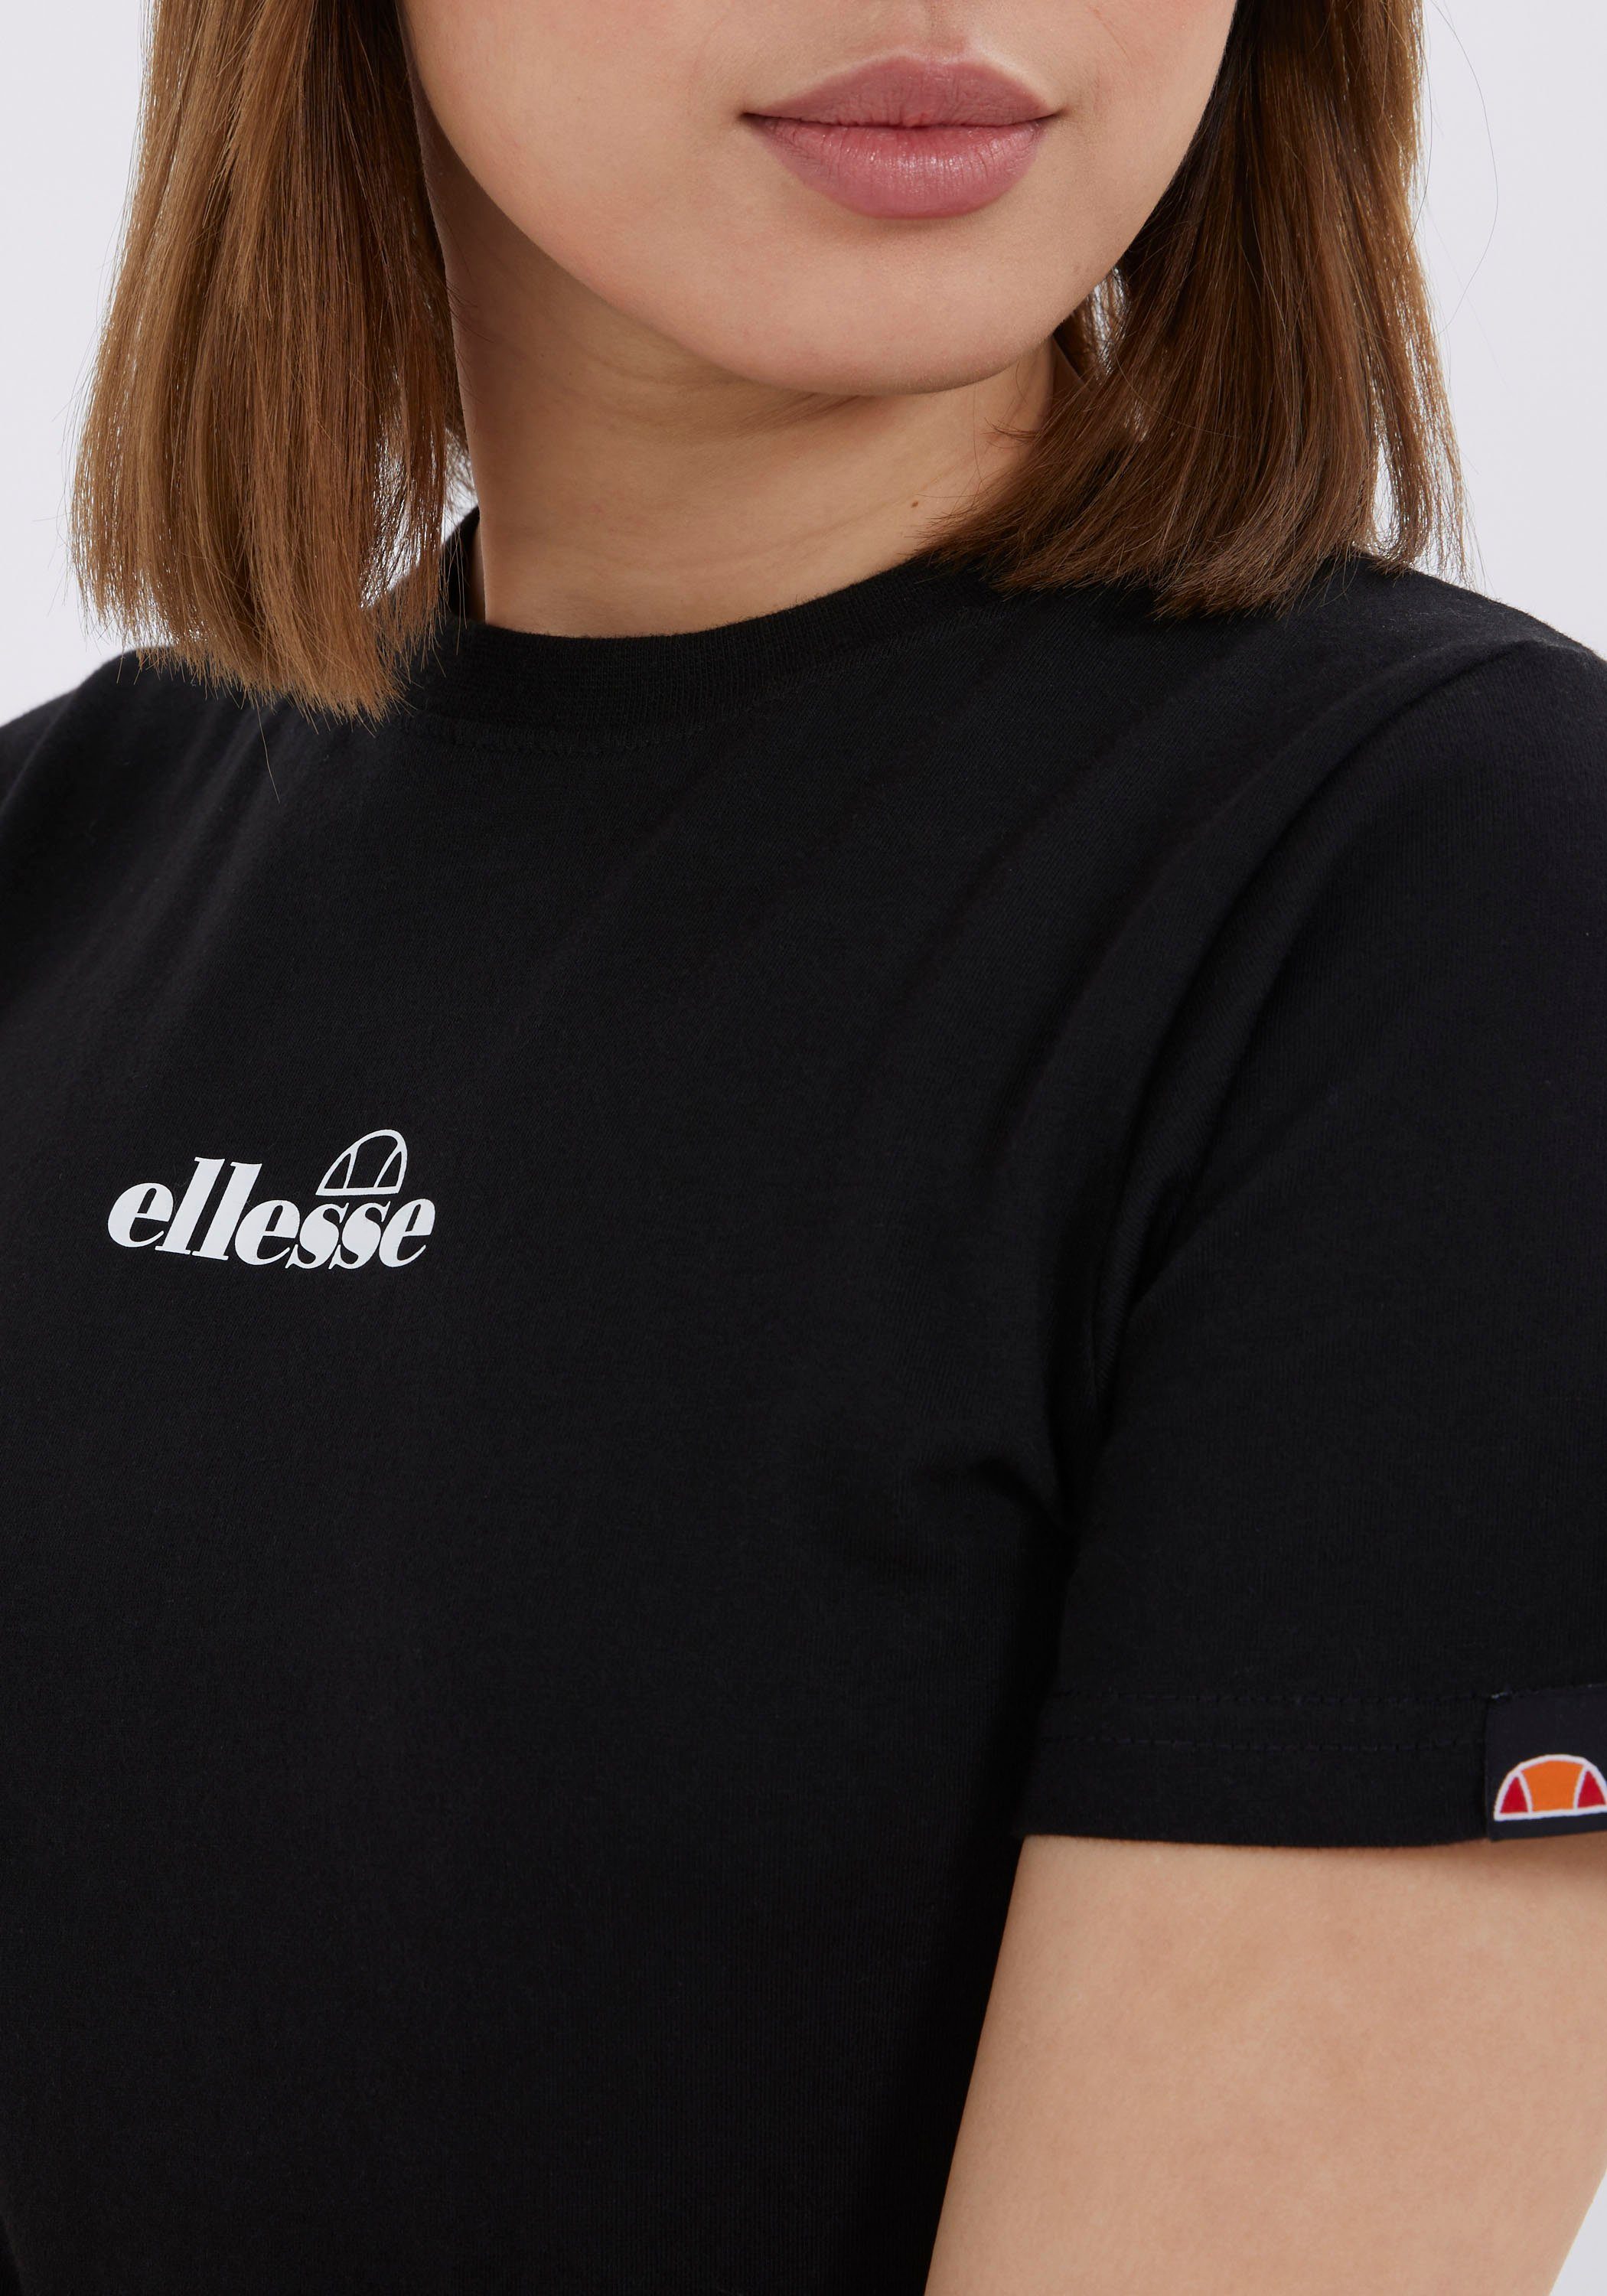 Ellesse T-SHIRT T-Shirt black BECKANA